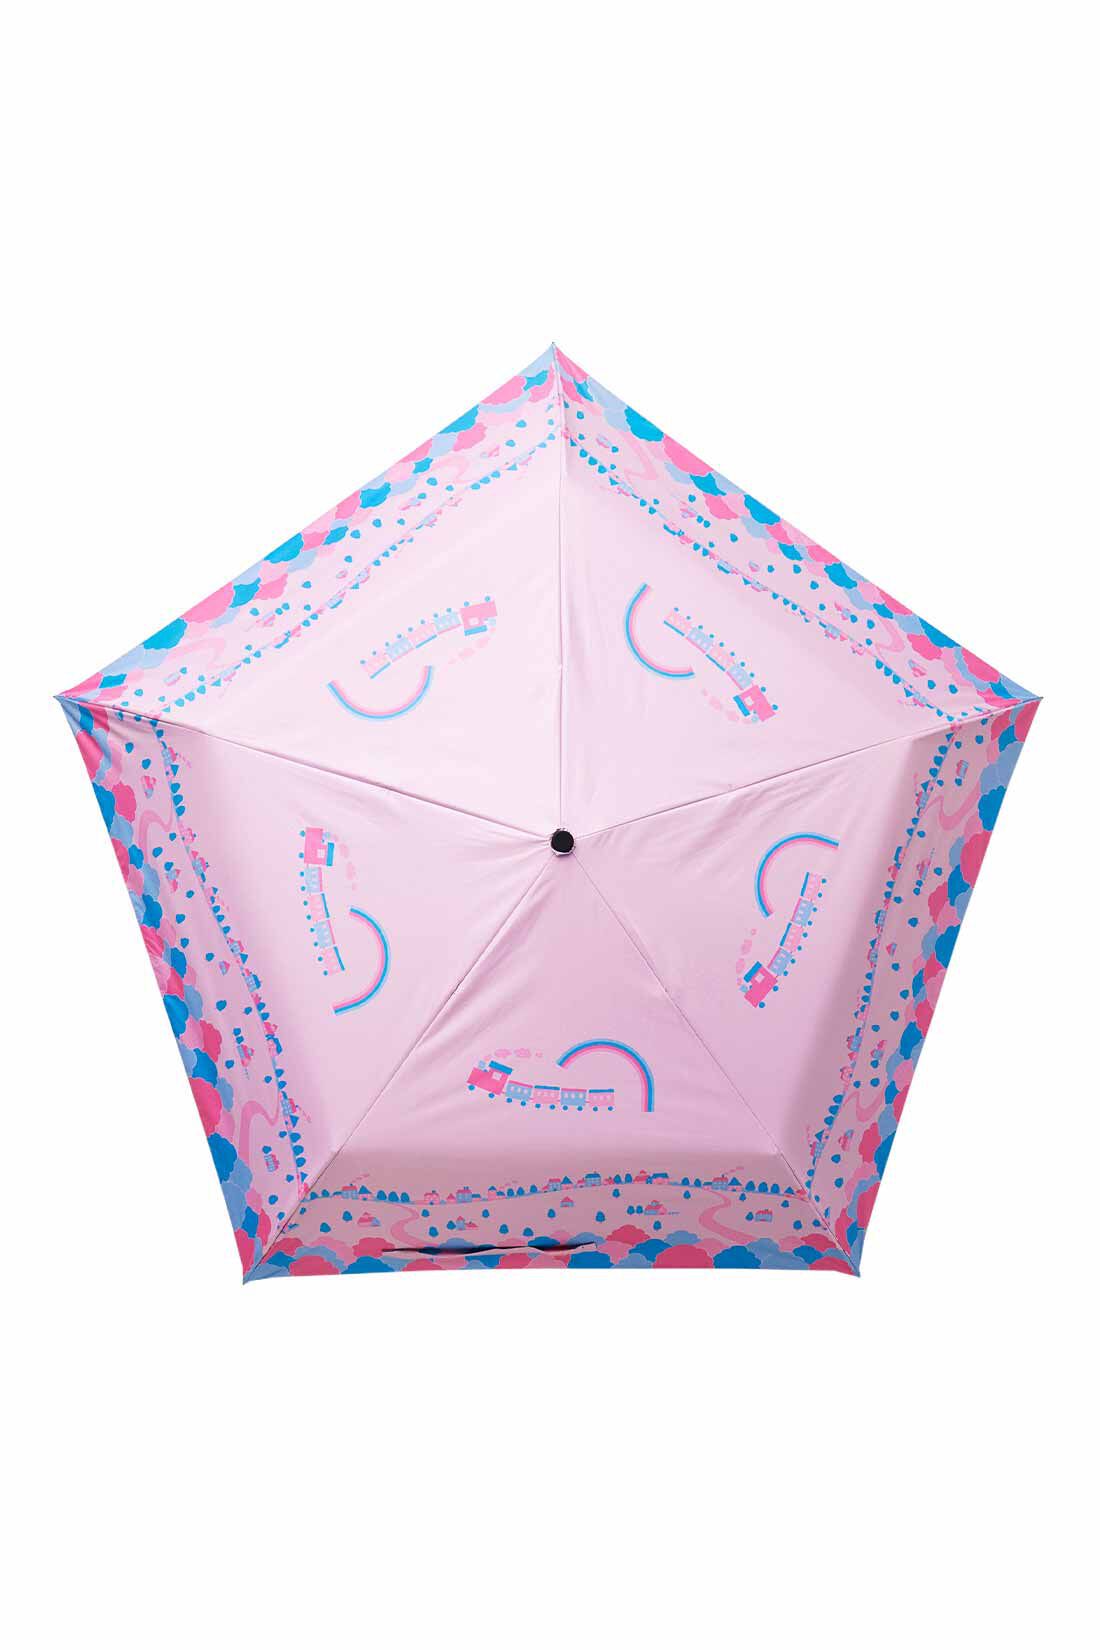 シロップ．|シモジマコラボ 軽量晴雨兼用折りたたみ傘〈シモジマトレイン〉